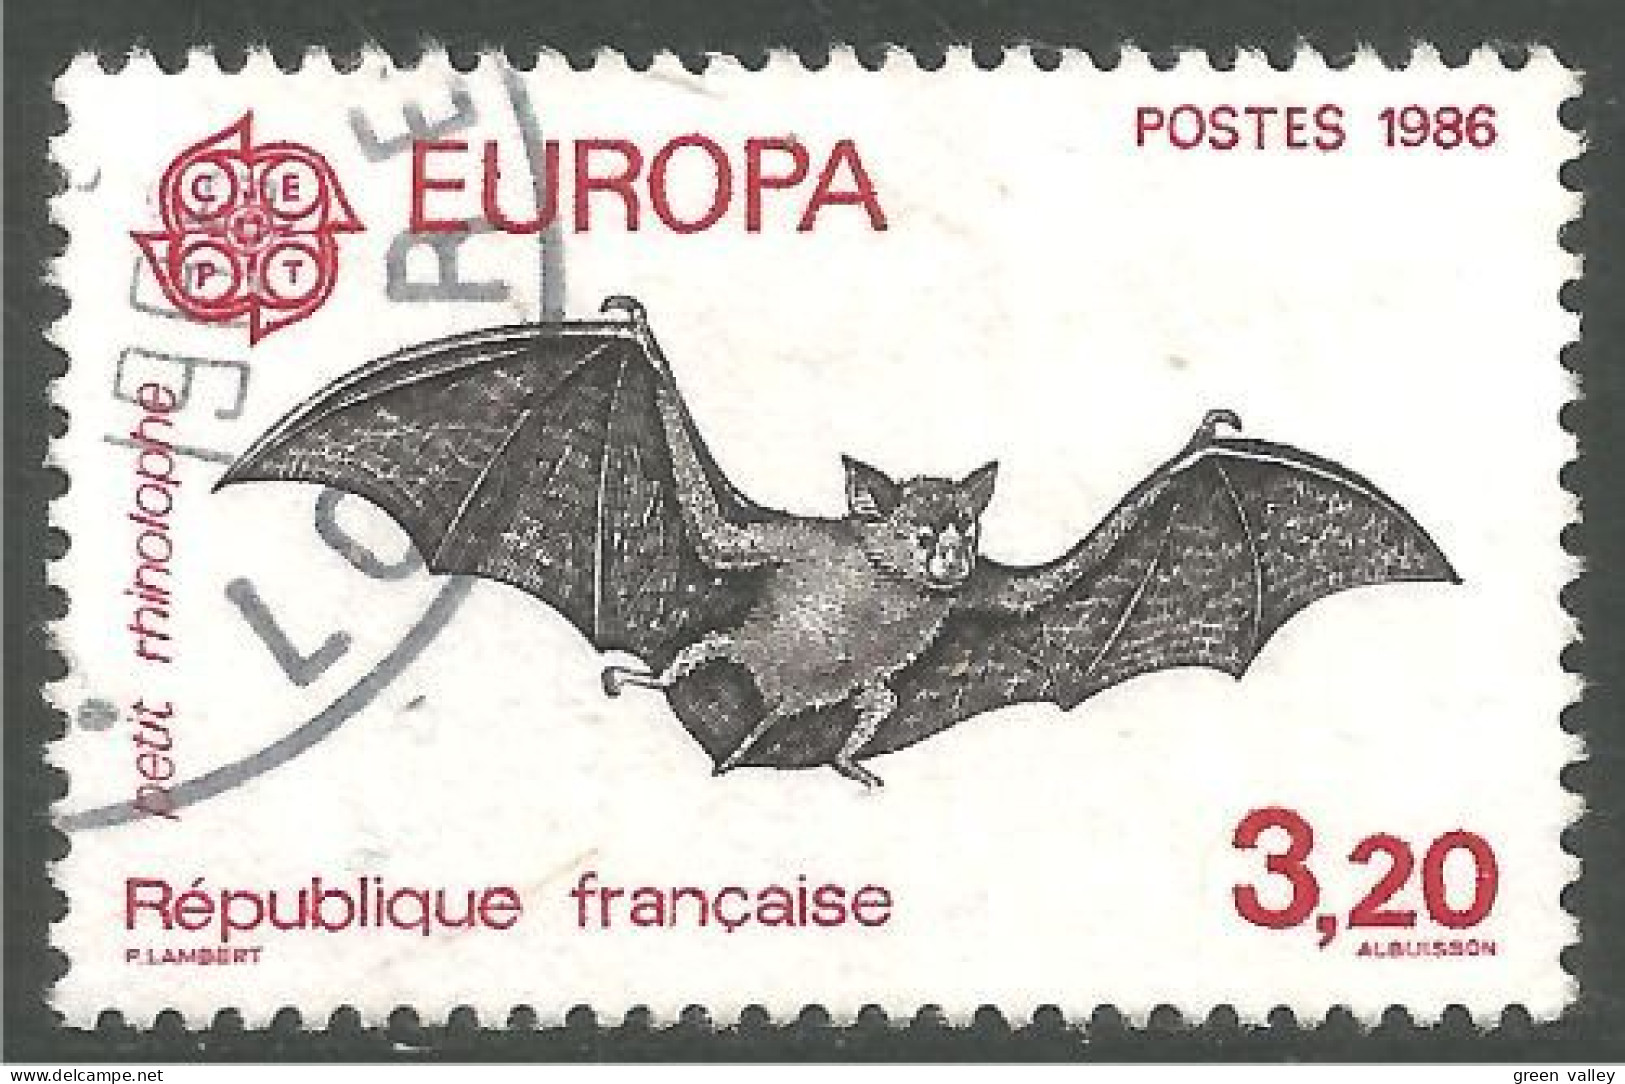 EU86-31 EUROPA CEPT 1986 France Chauve-souris Bat - 1986